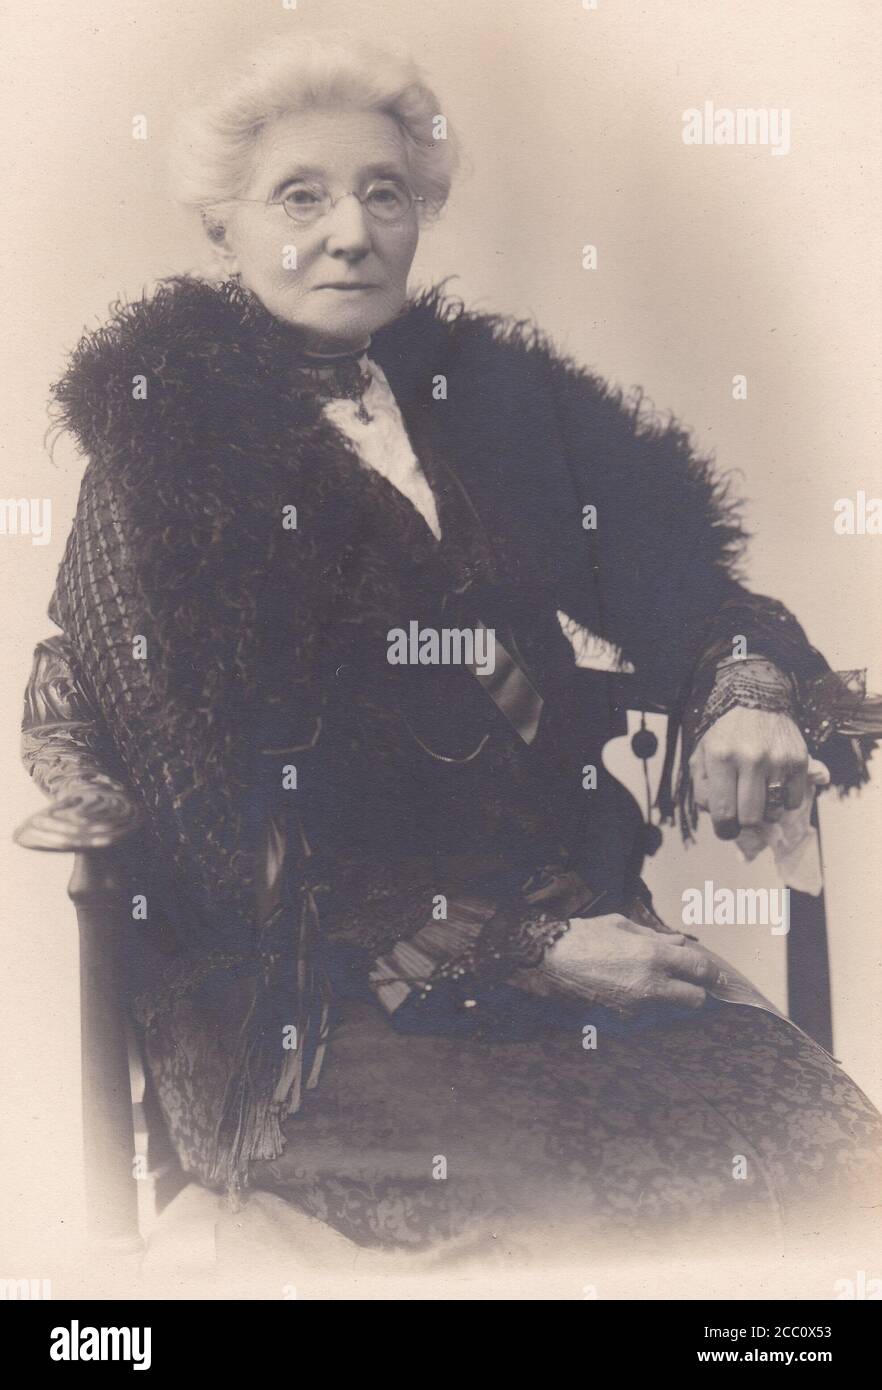 Foto in bianco e nero d'epoca di un'elegante donna del 1900 Foto Stock